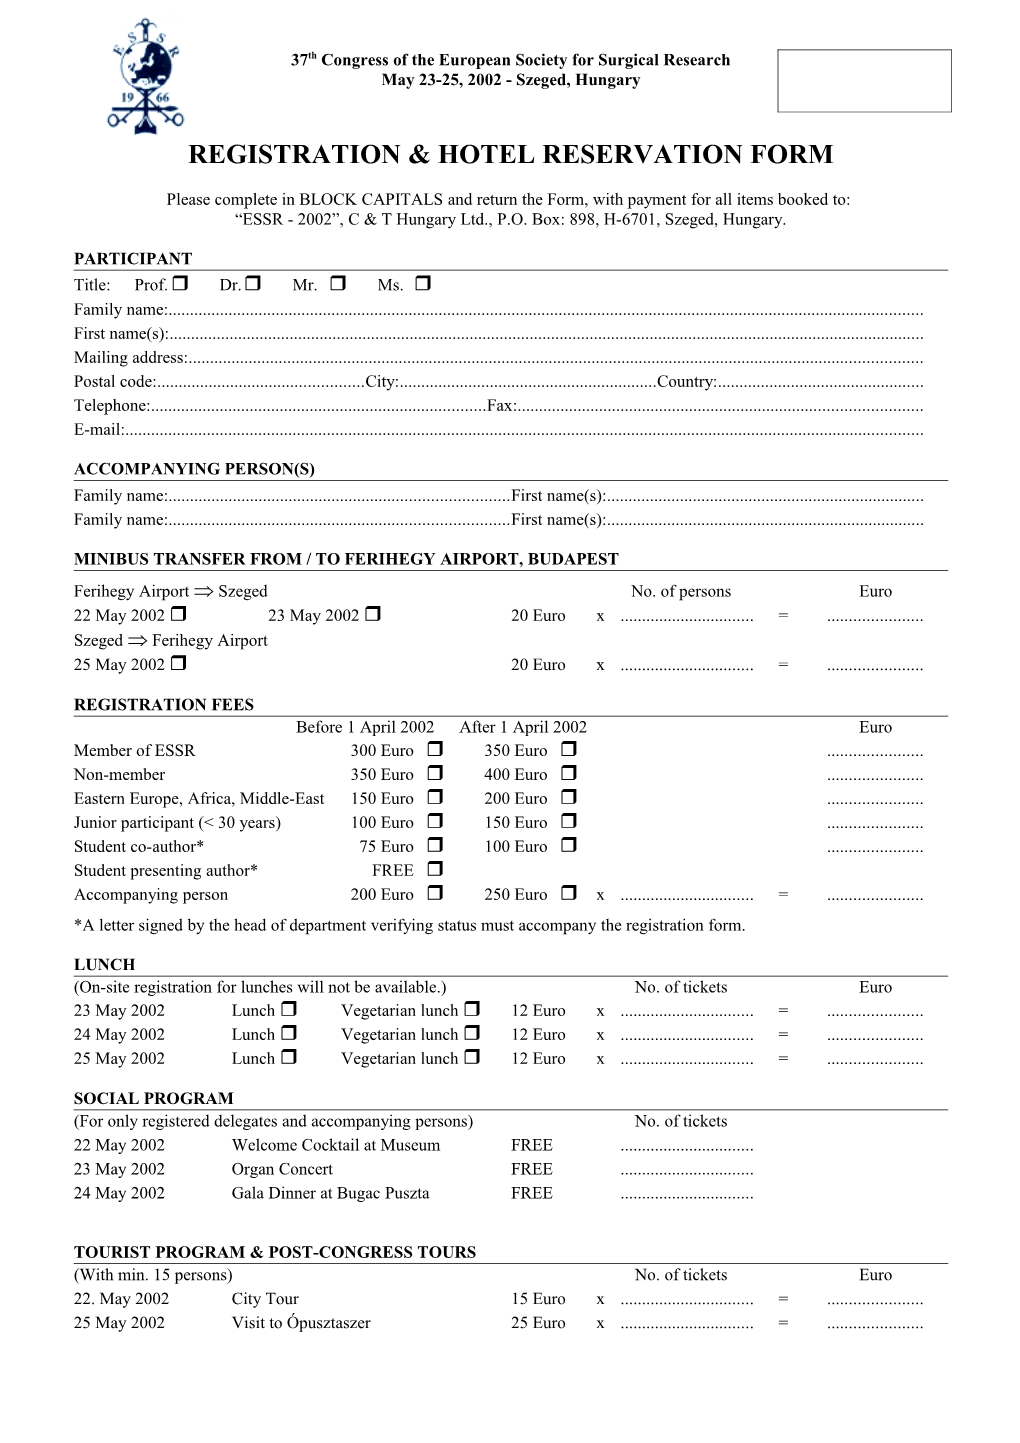 Registration & Hotel Reservation Form